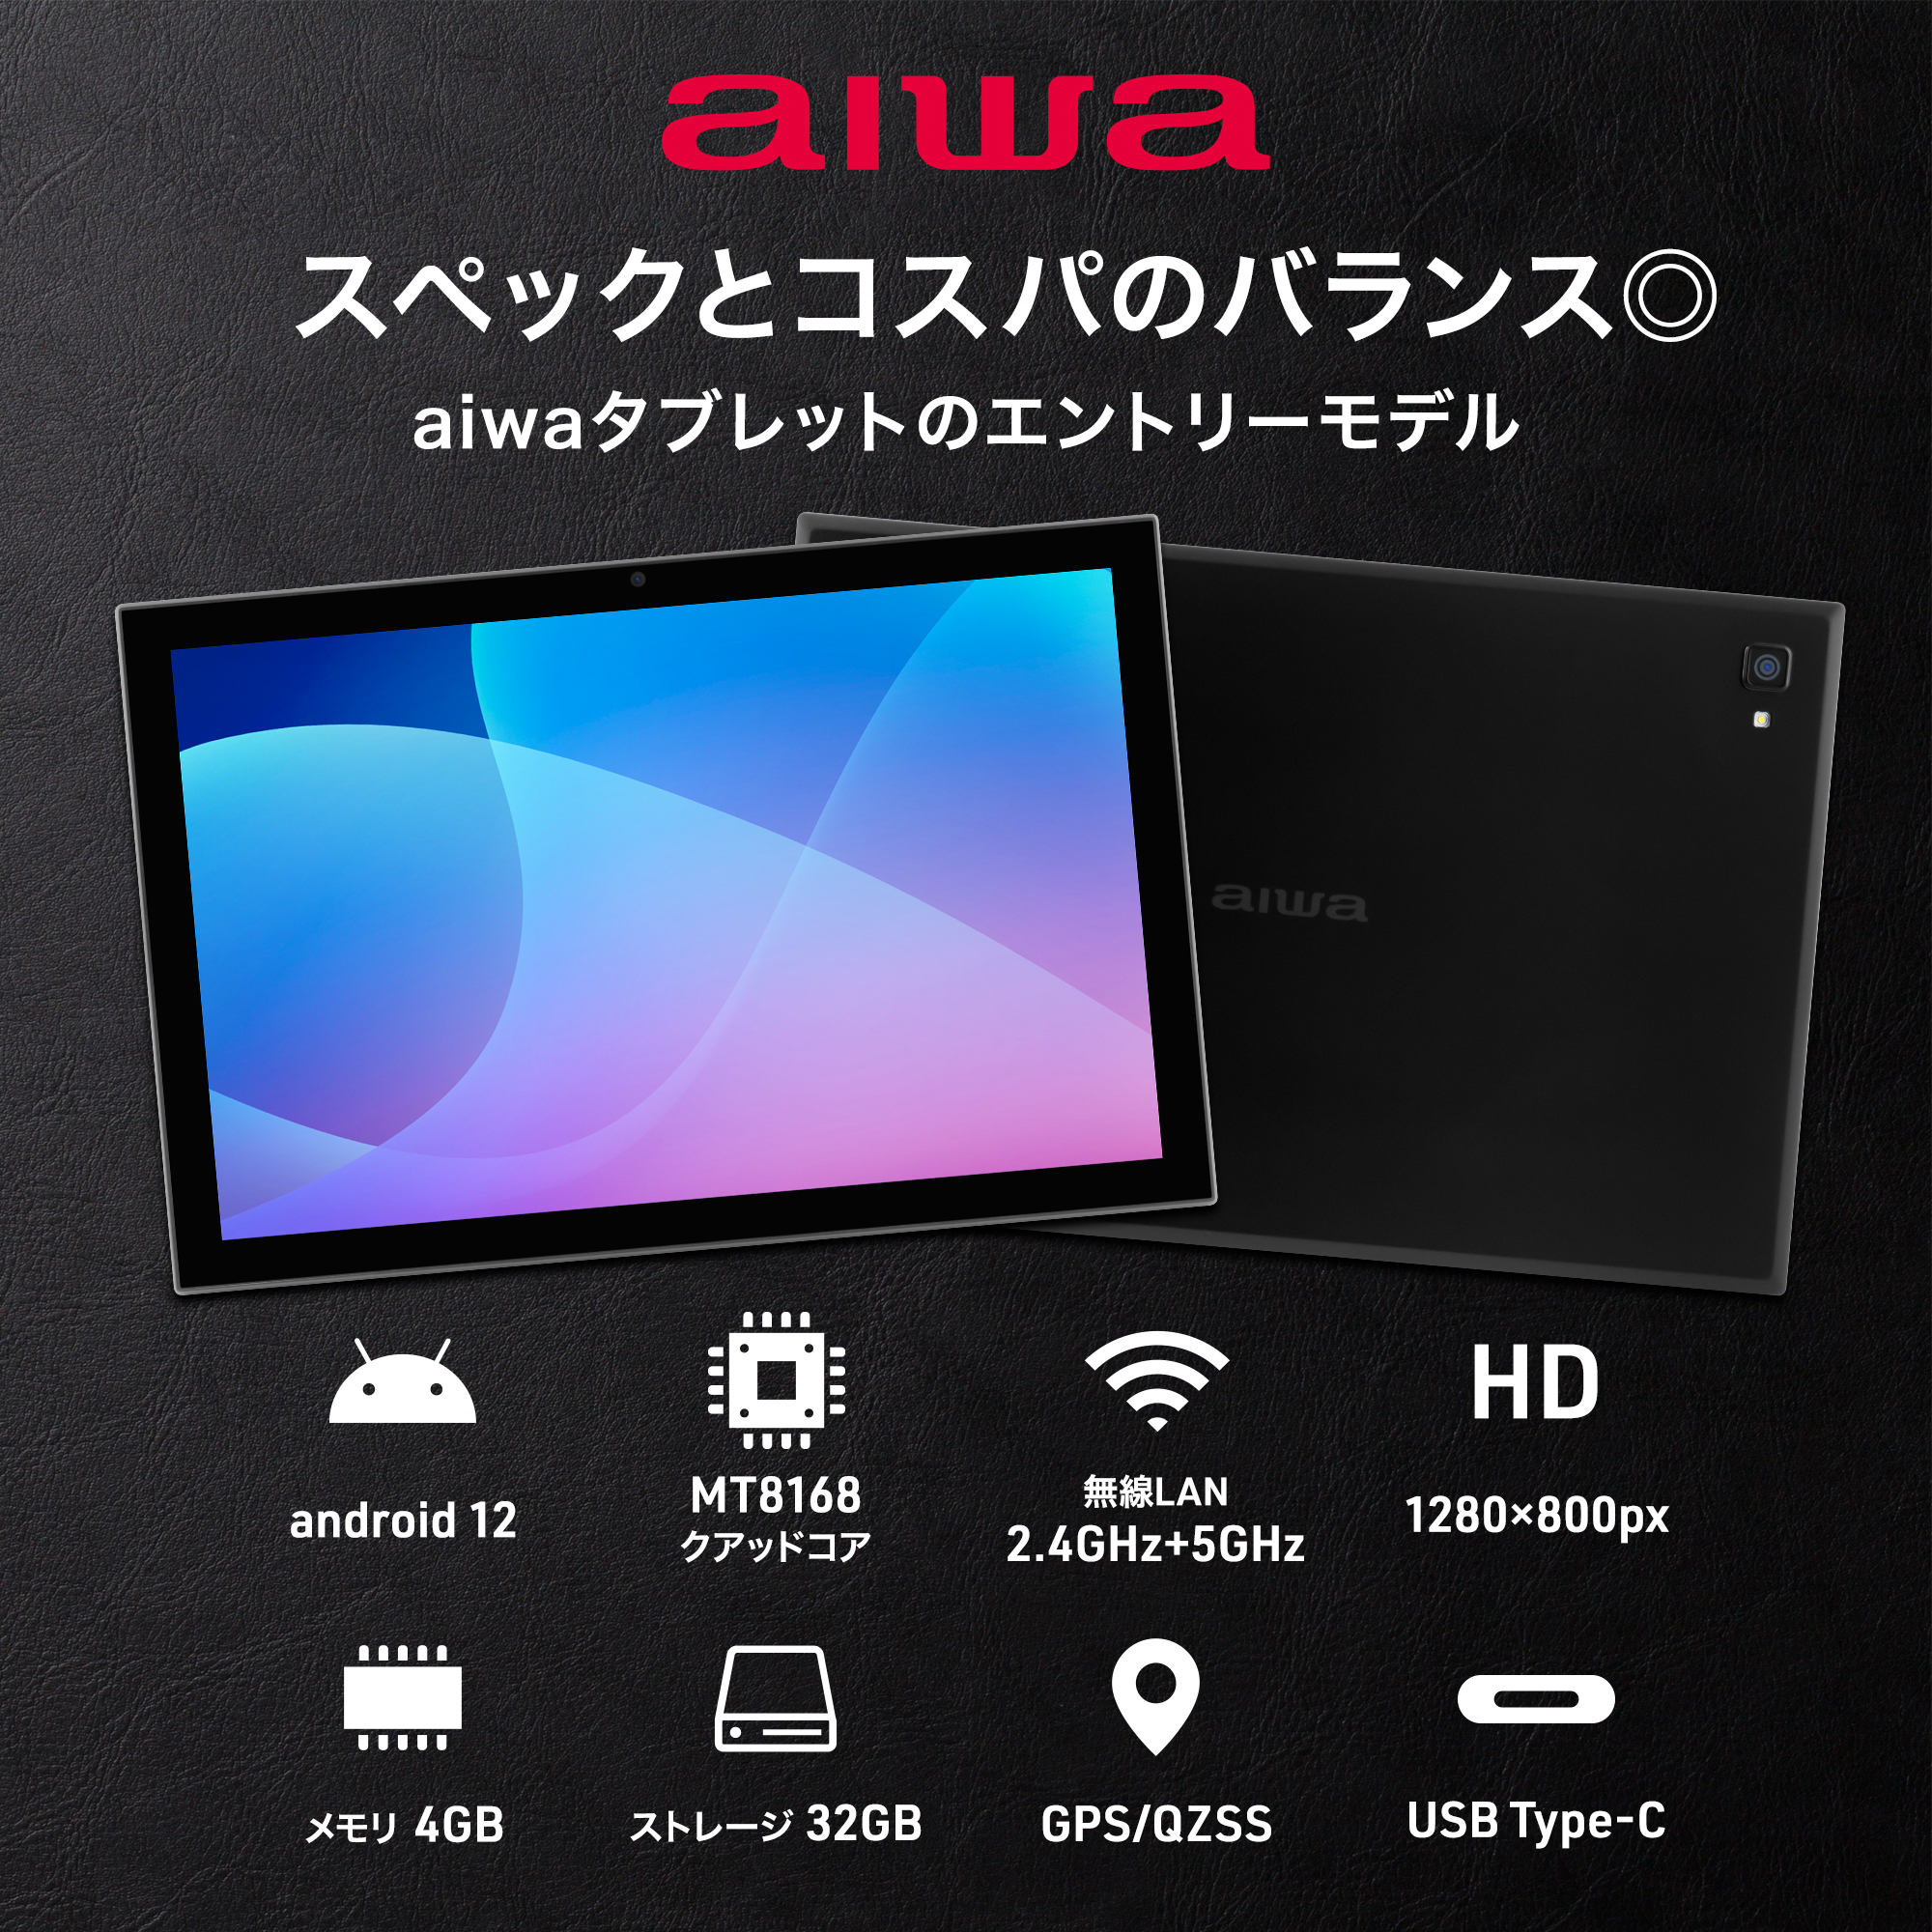 aiwa 10.1インチAndroidタブレット型PC(ブラック) 【JA2-TBA1002-D】 aiwaデジタル公式オンラインストア  aiwaデジタルダイレクト